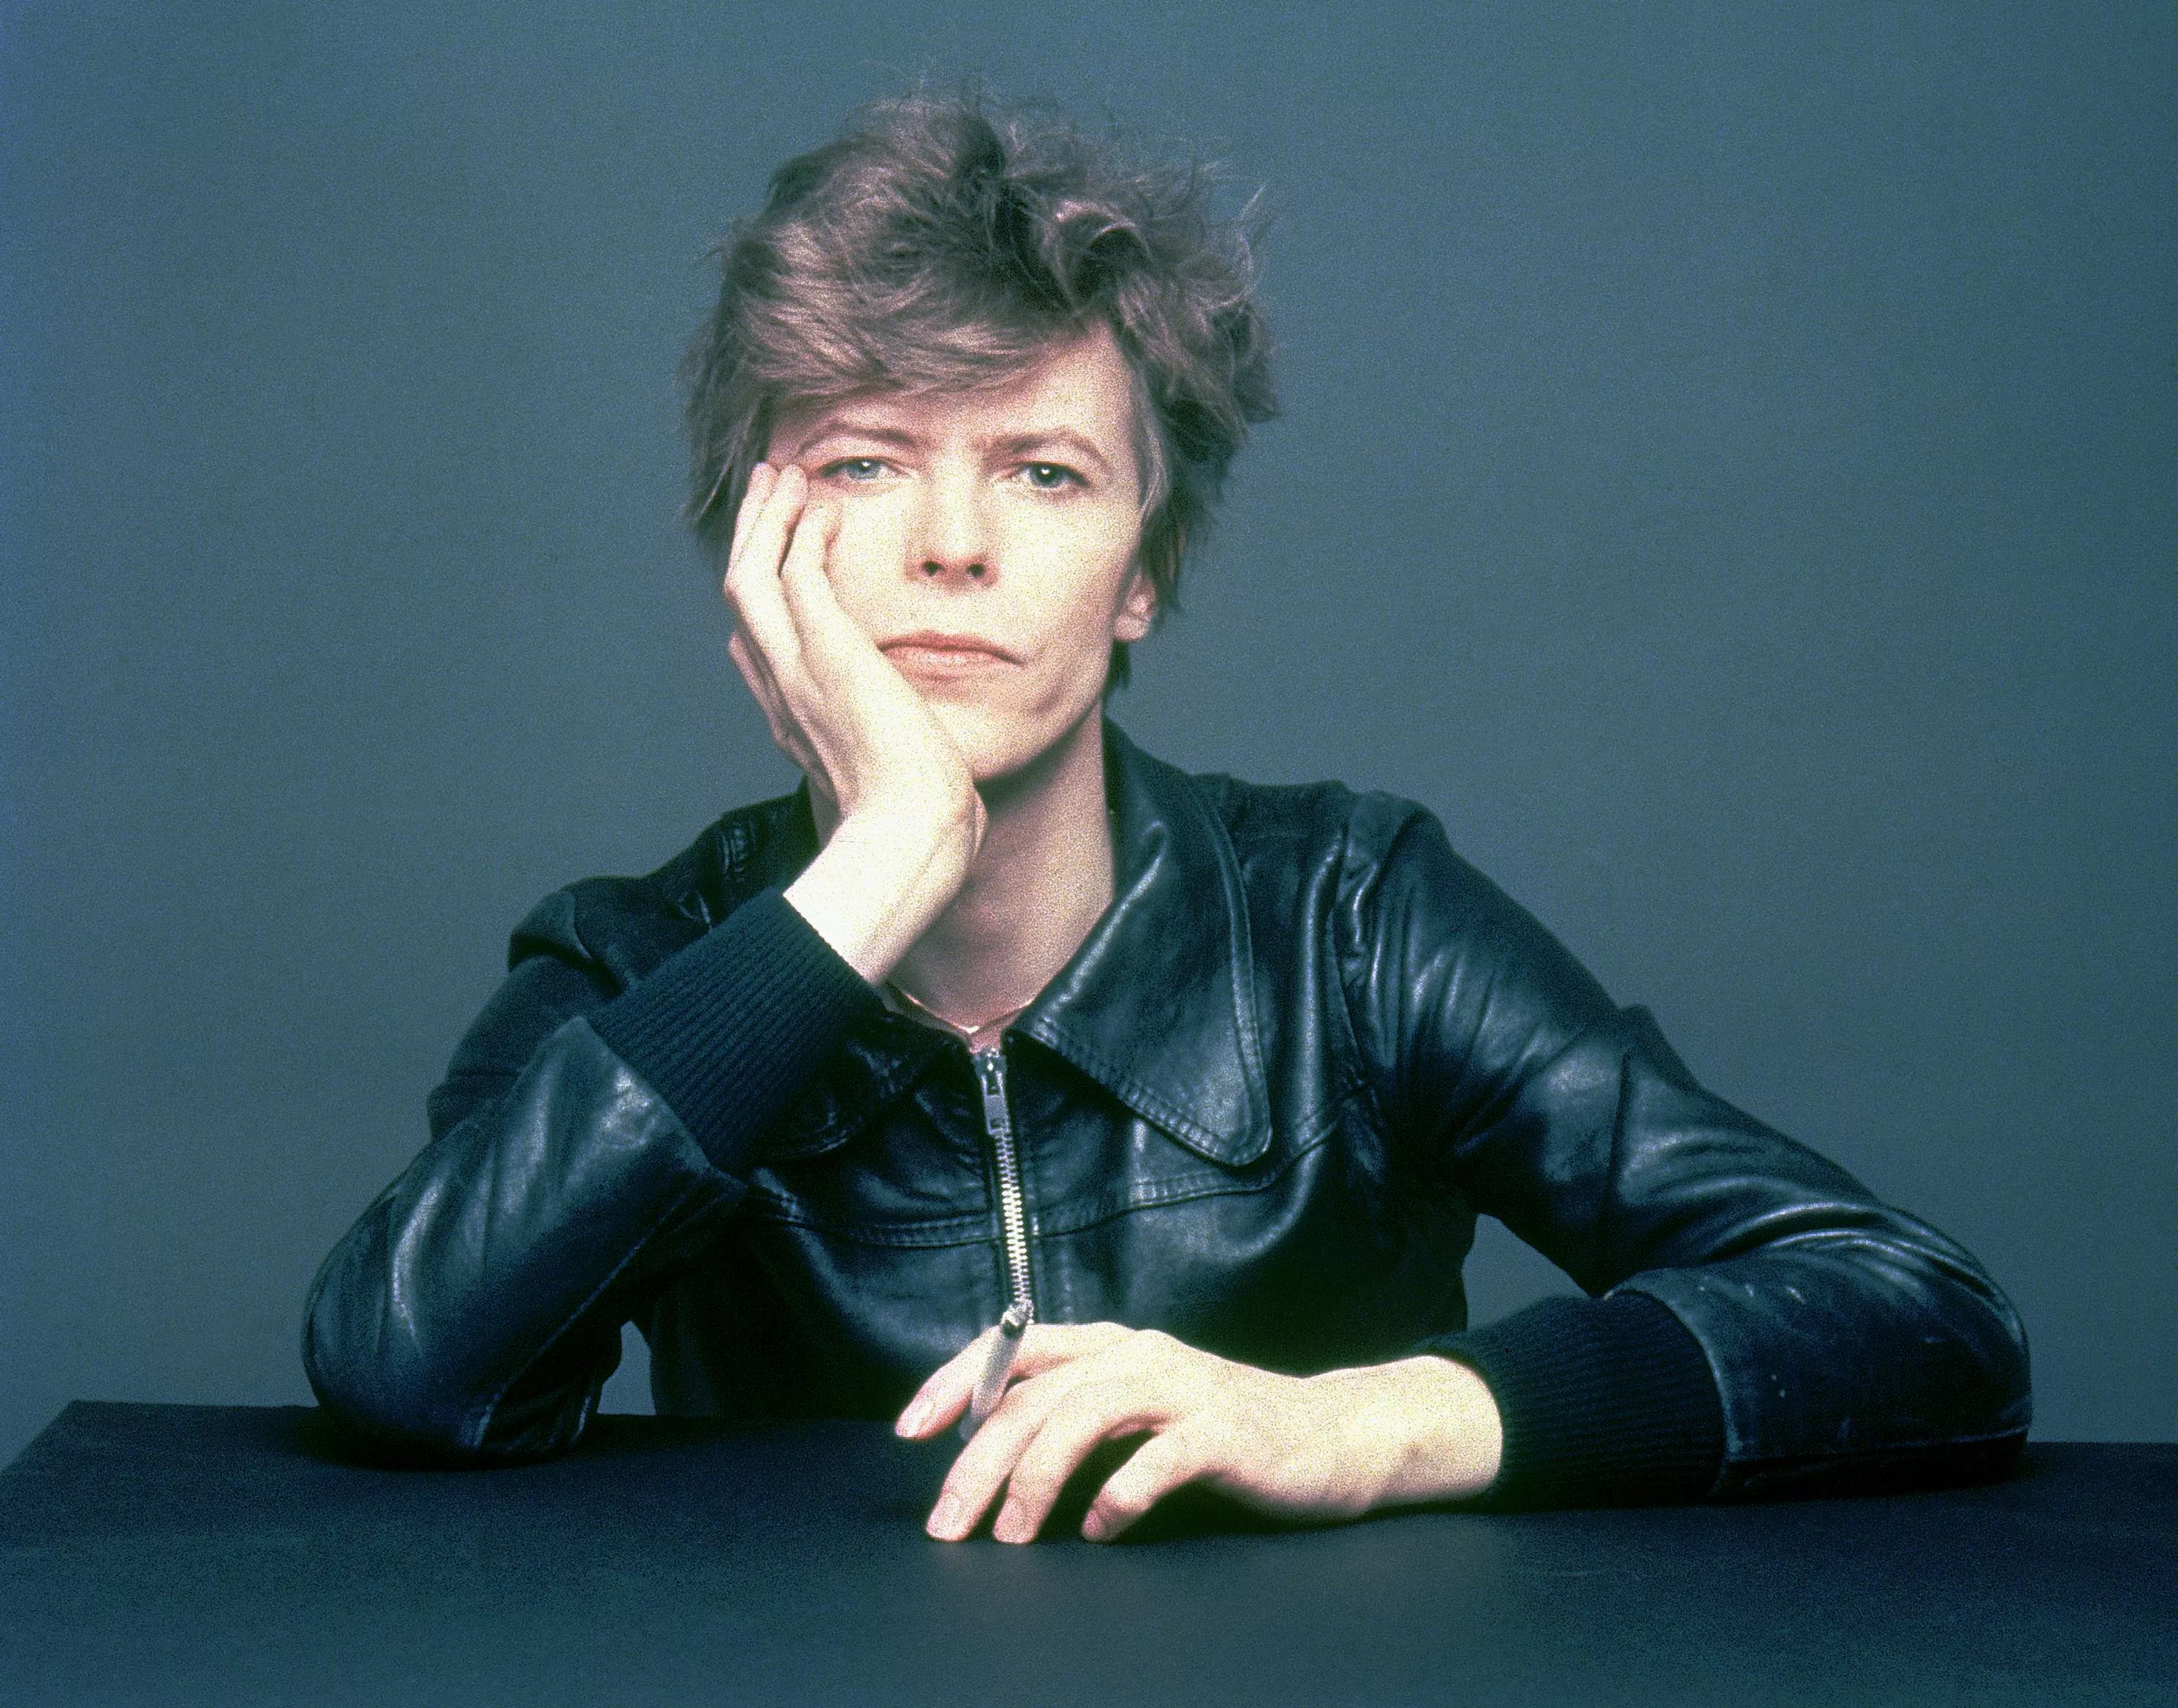 Kom til Bowie-hyldestkoncert med blandt andre Nephew-medlemmer